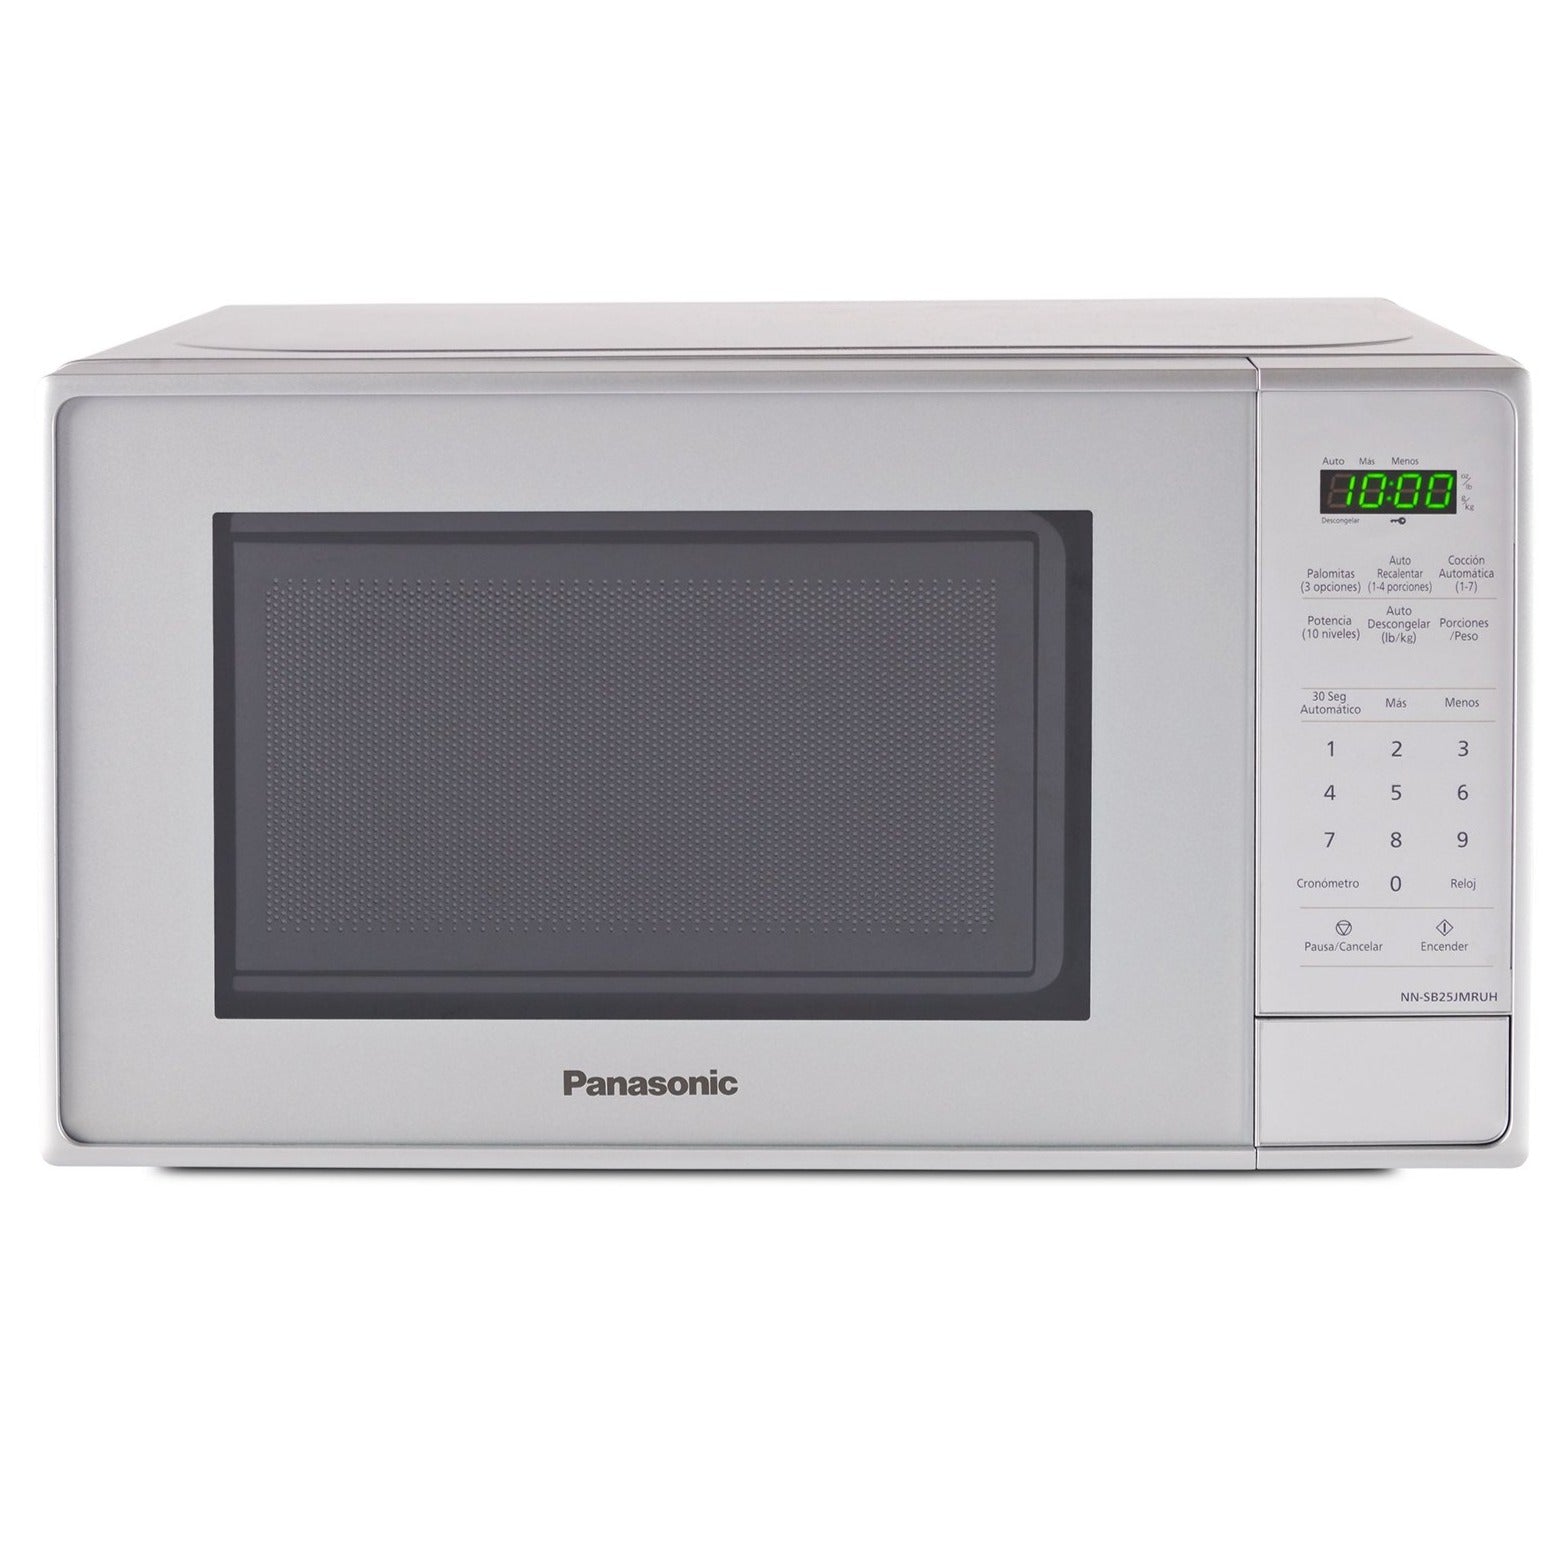 Multimax - Complementa tu cocina con el horno microondas Selectron de 700W  de potencia y haz más en tu hogar. Descubre las OFERTAS EXCLUSIVAS WEB que  tenemos para ti hasta el 16